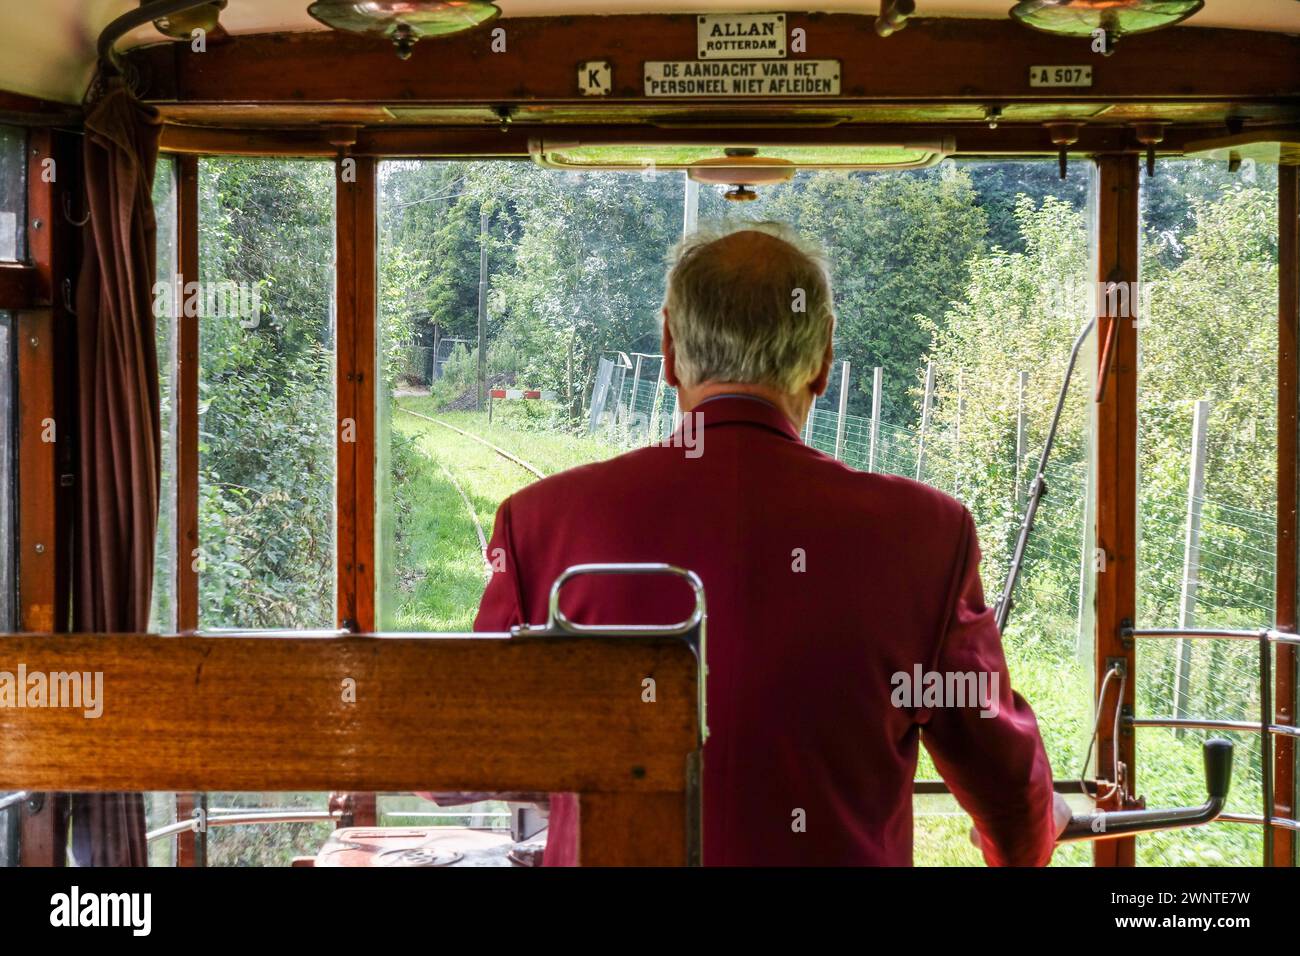 Conducteur de tramway en veste rouge regardant depuis la cabine d'un tramway vintage, observant la voie ferrée pittoresque et les arbres, à Amsterdam, pays-Bas Banque D'Images